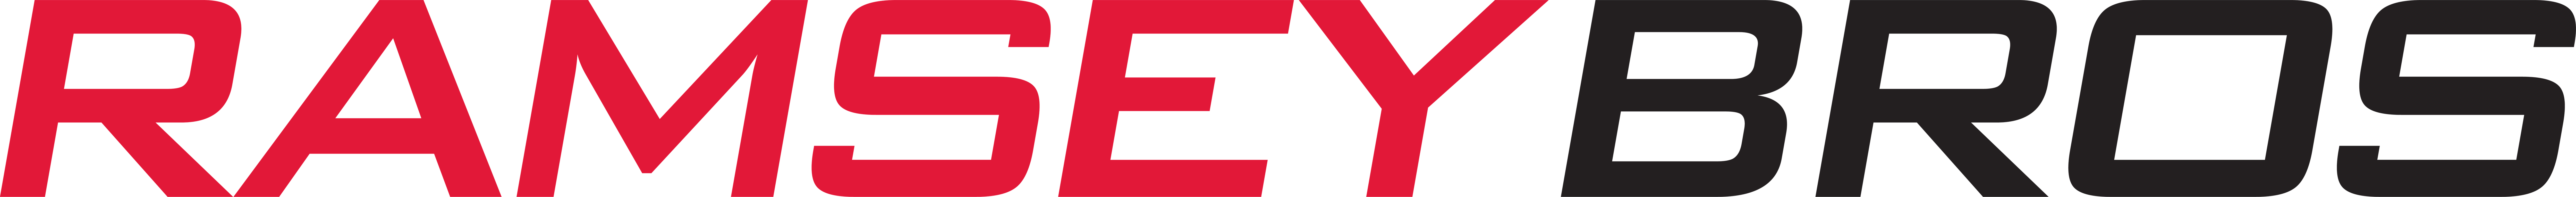 Ramsey Bros logo